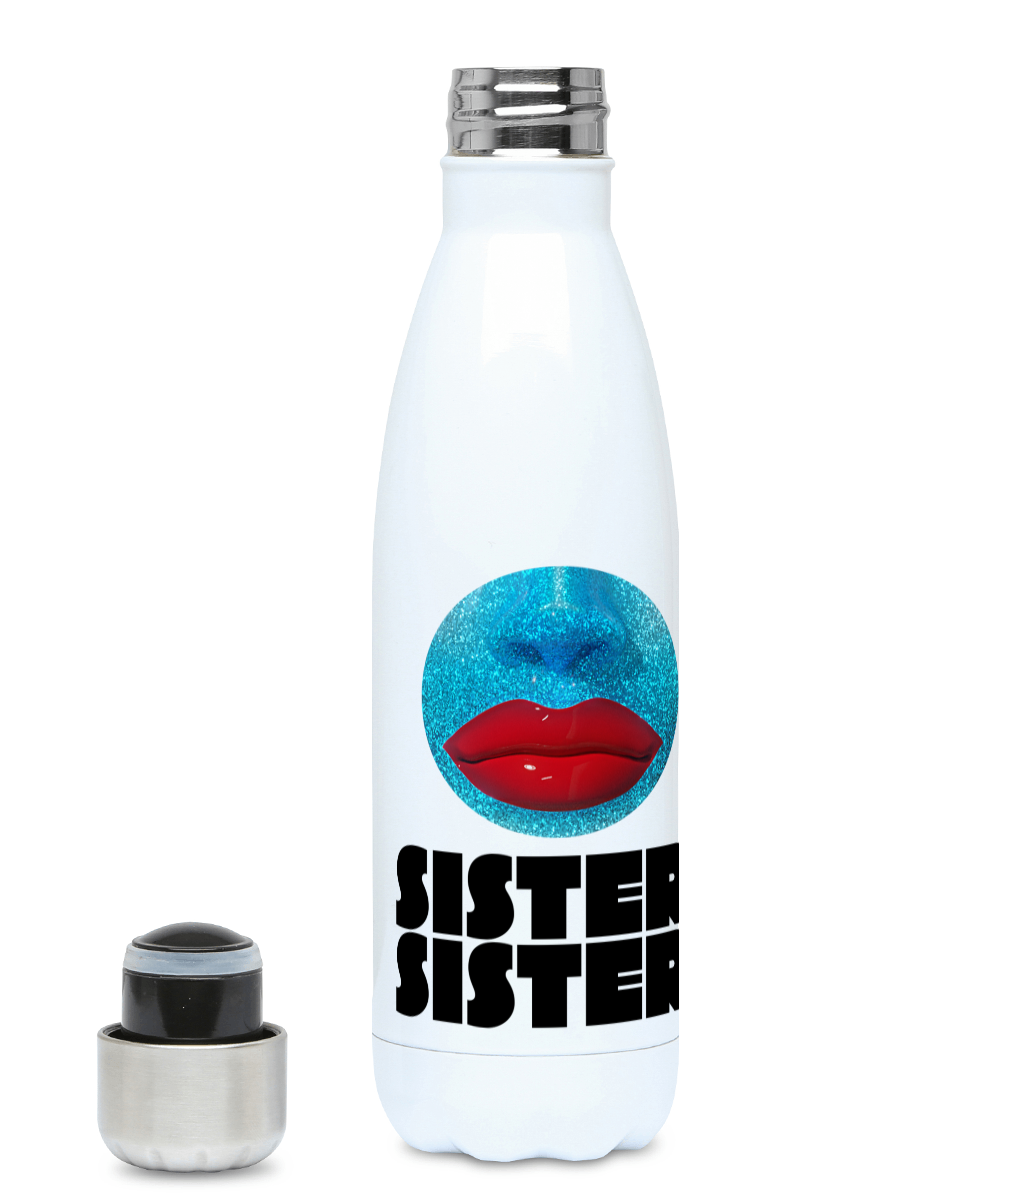 Sister Sister - Orb Water Bottle